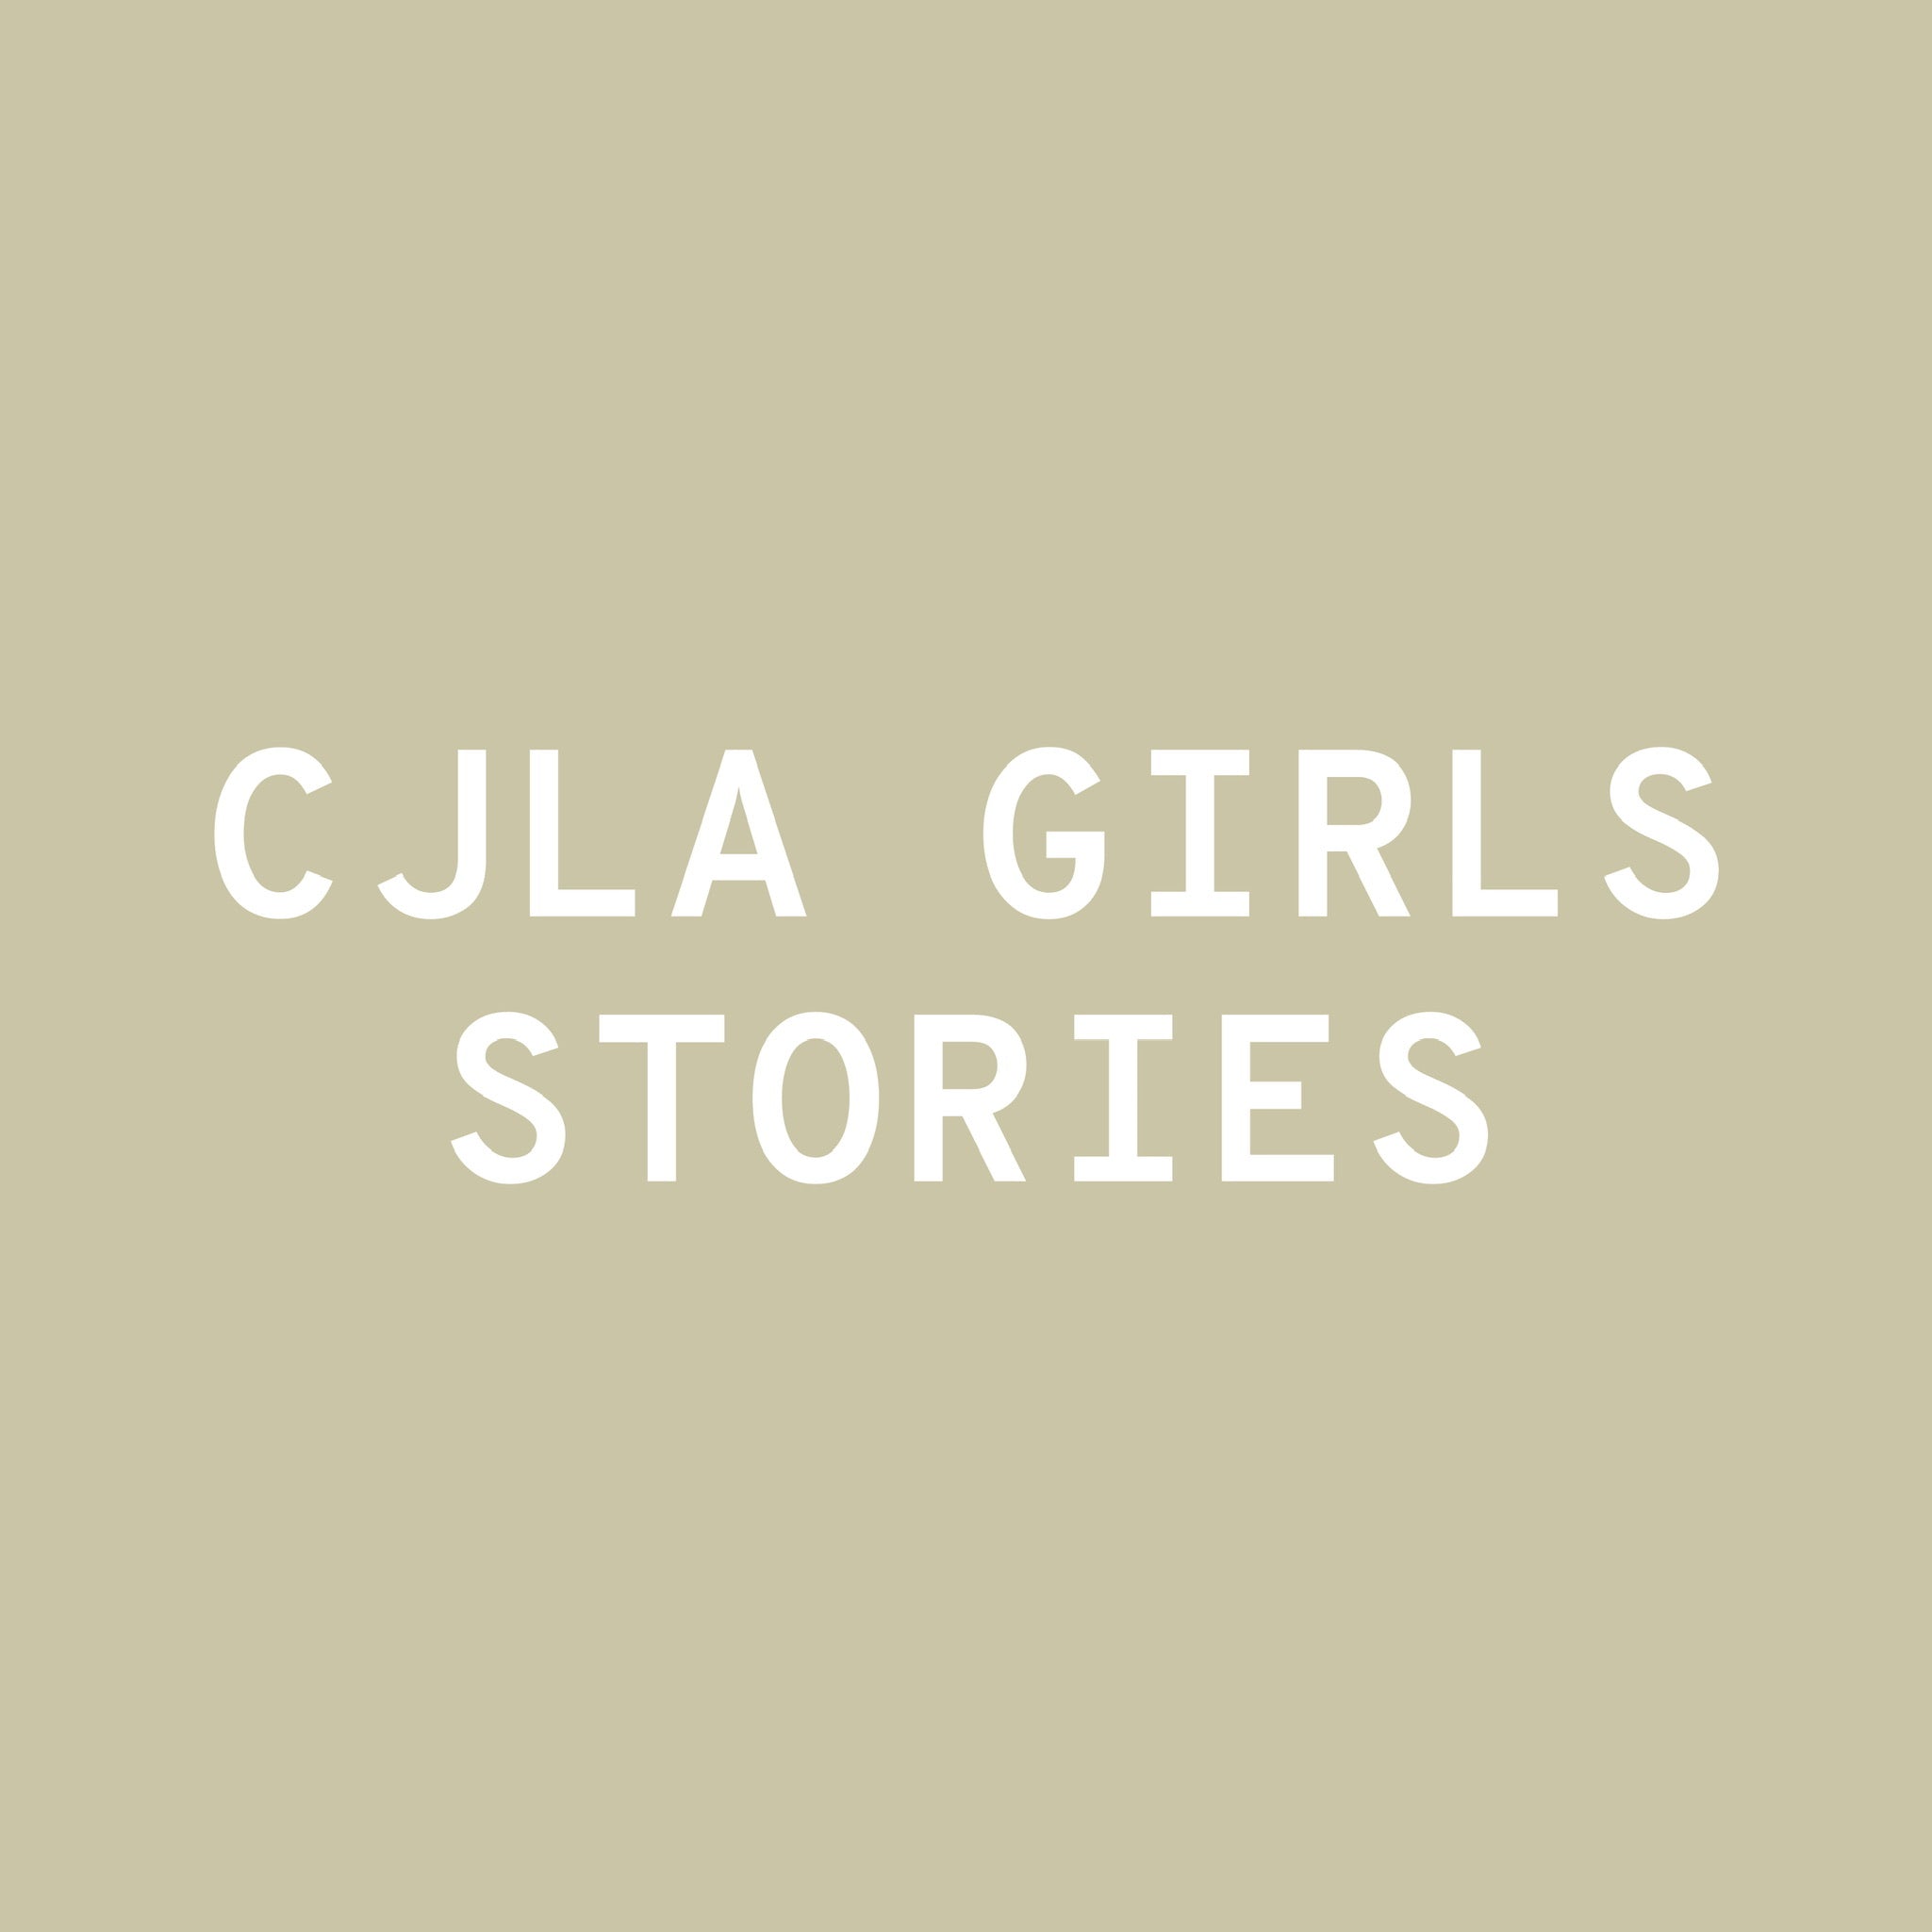 CJLA Girls Stories: Sidnie DesCamillo